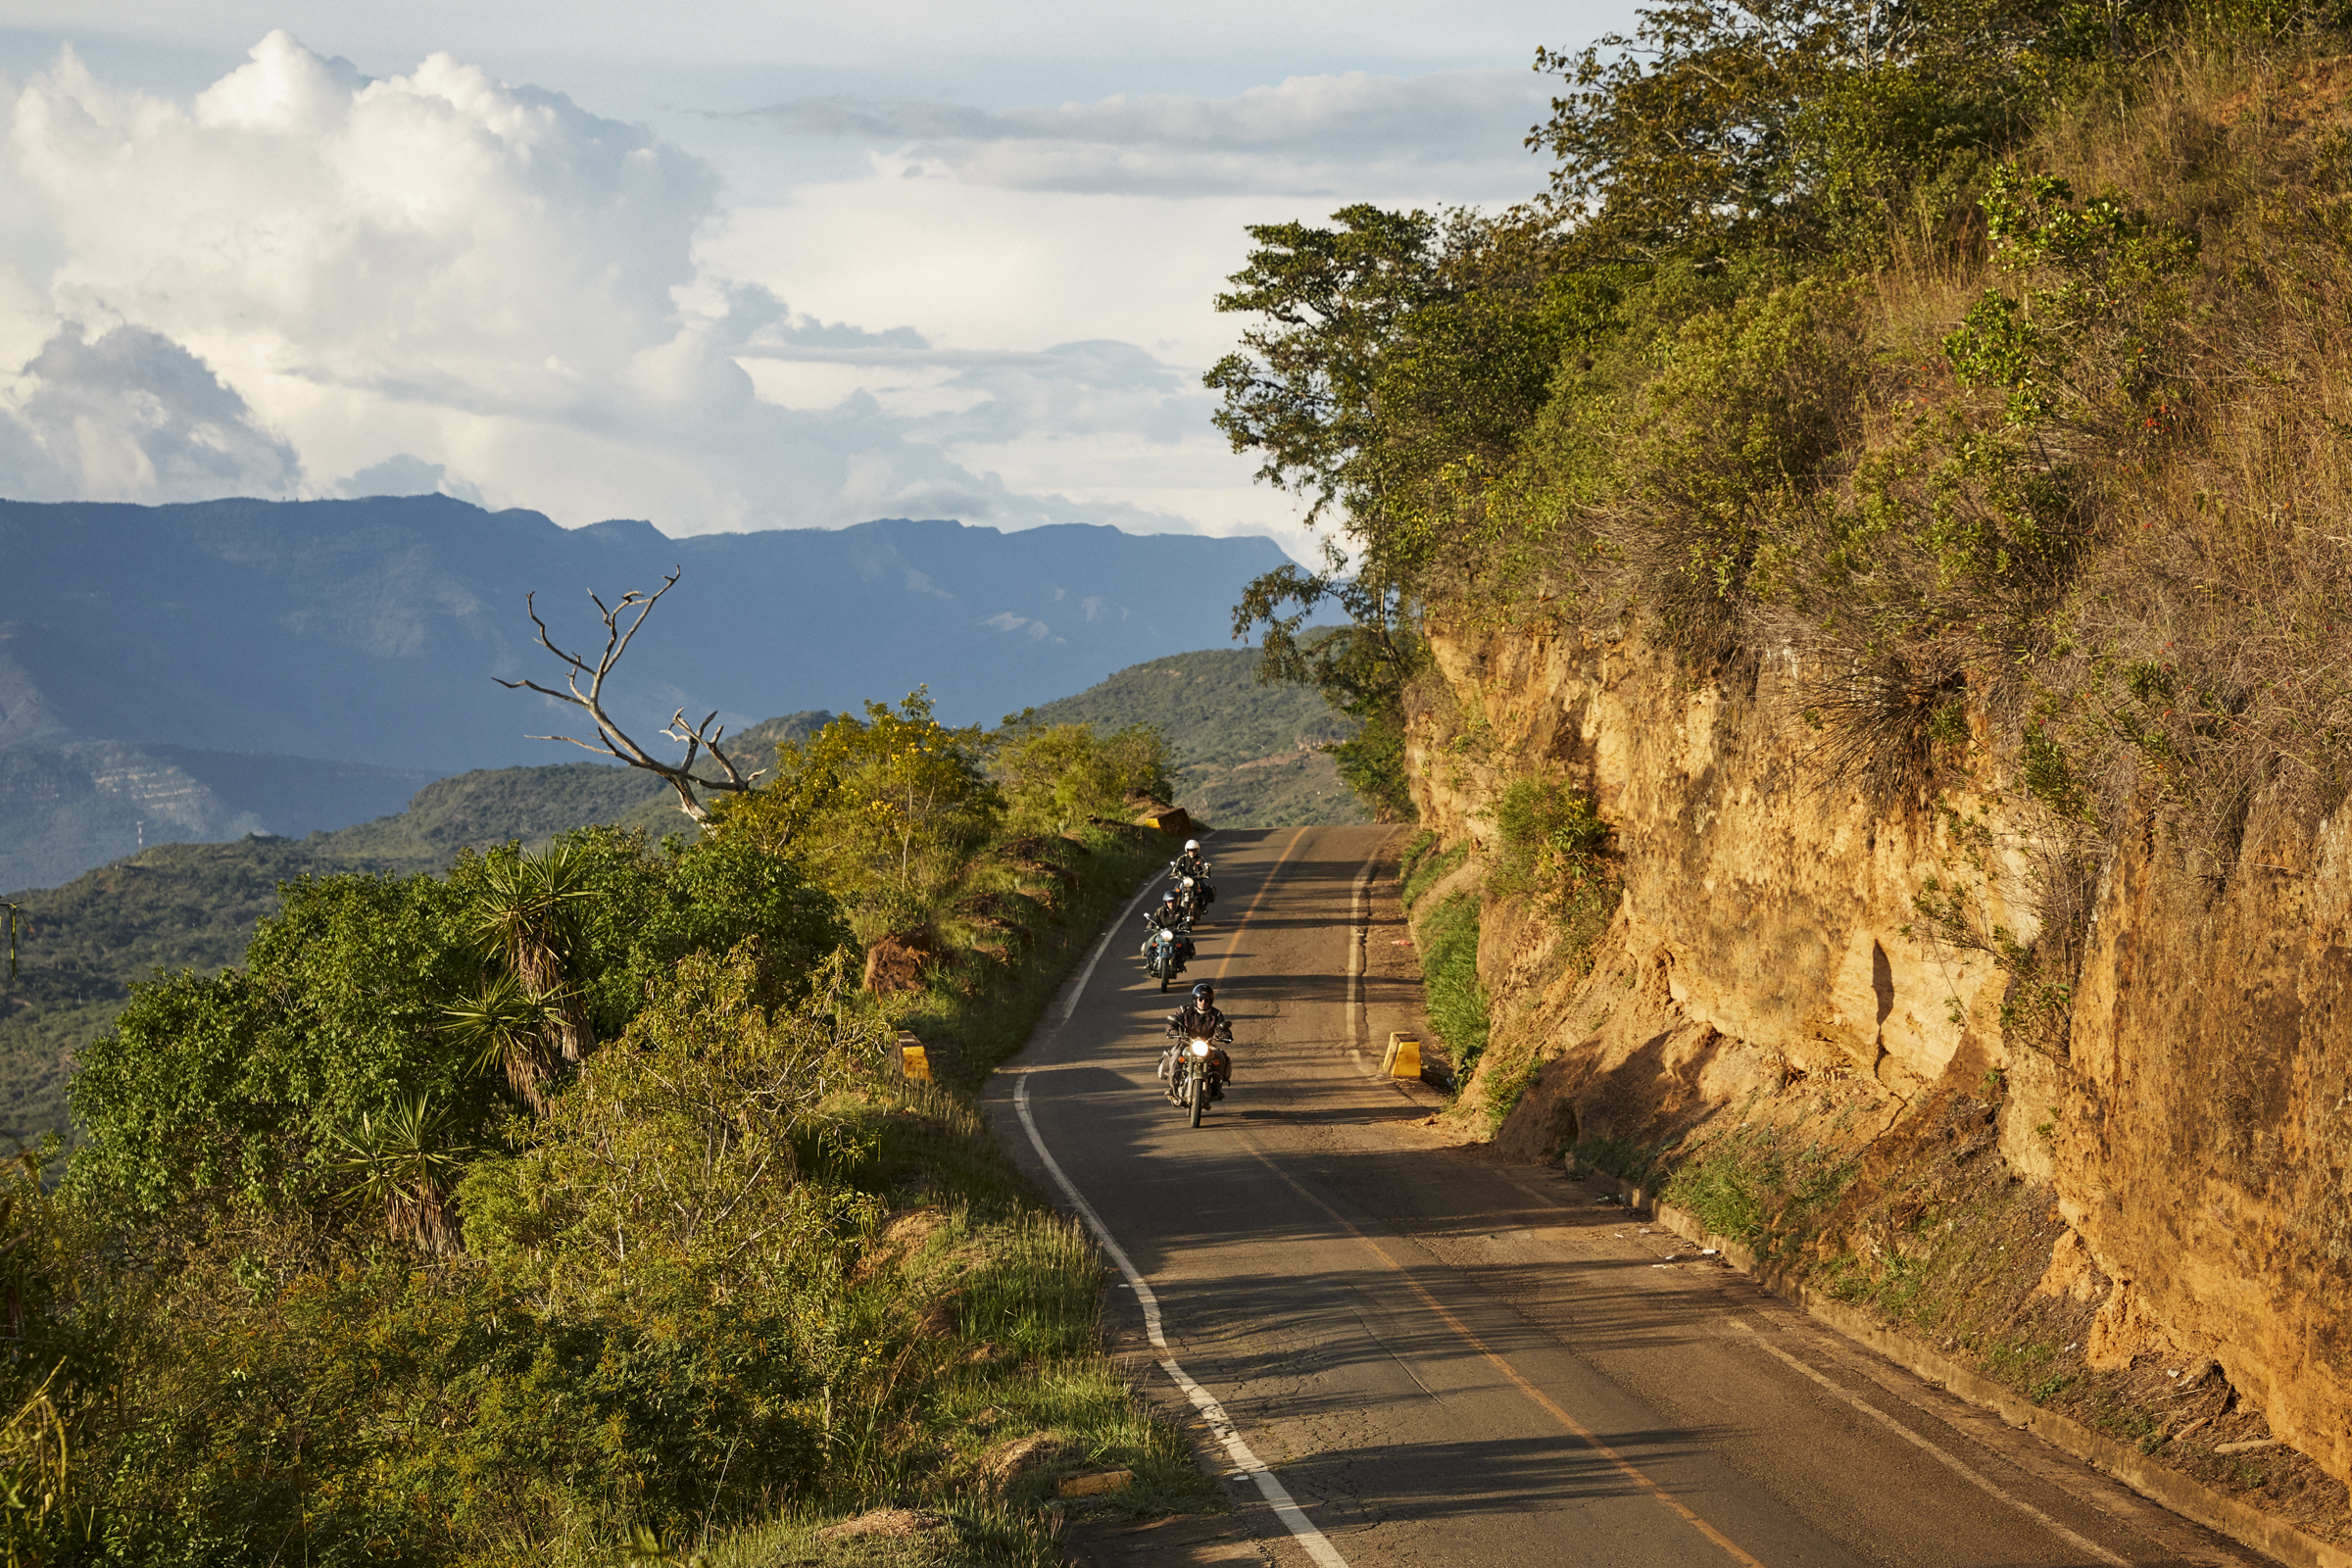 Mono 500 Colombie paysages road trip moto